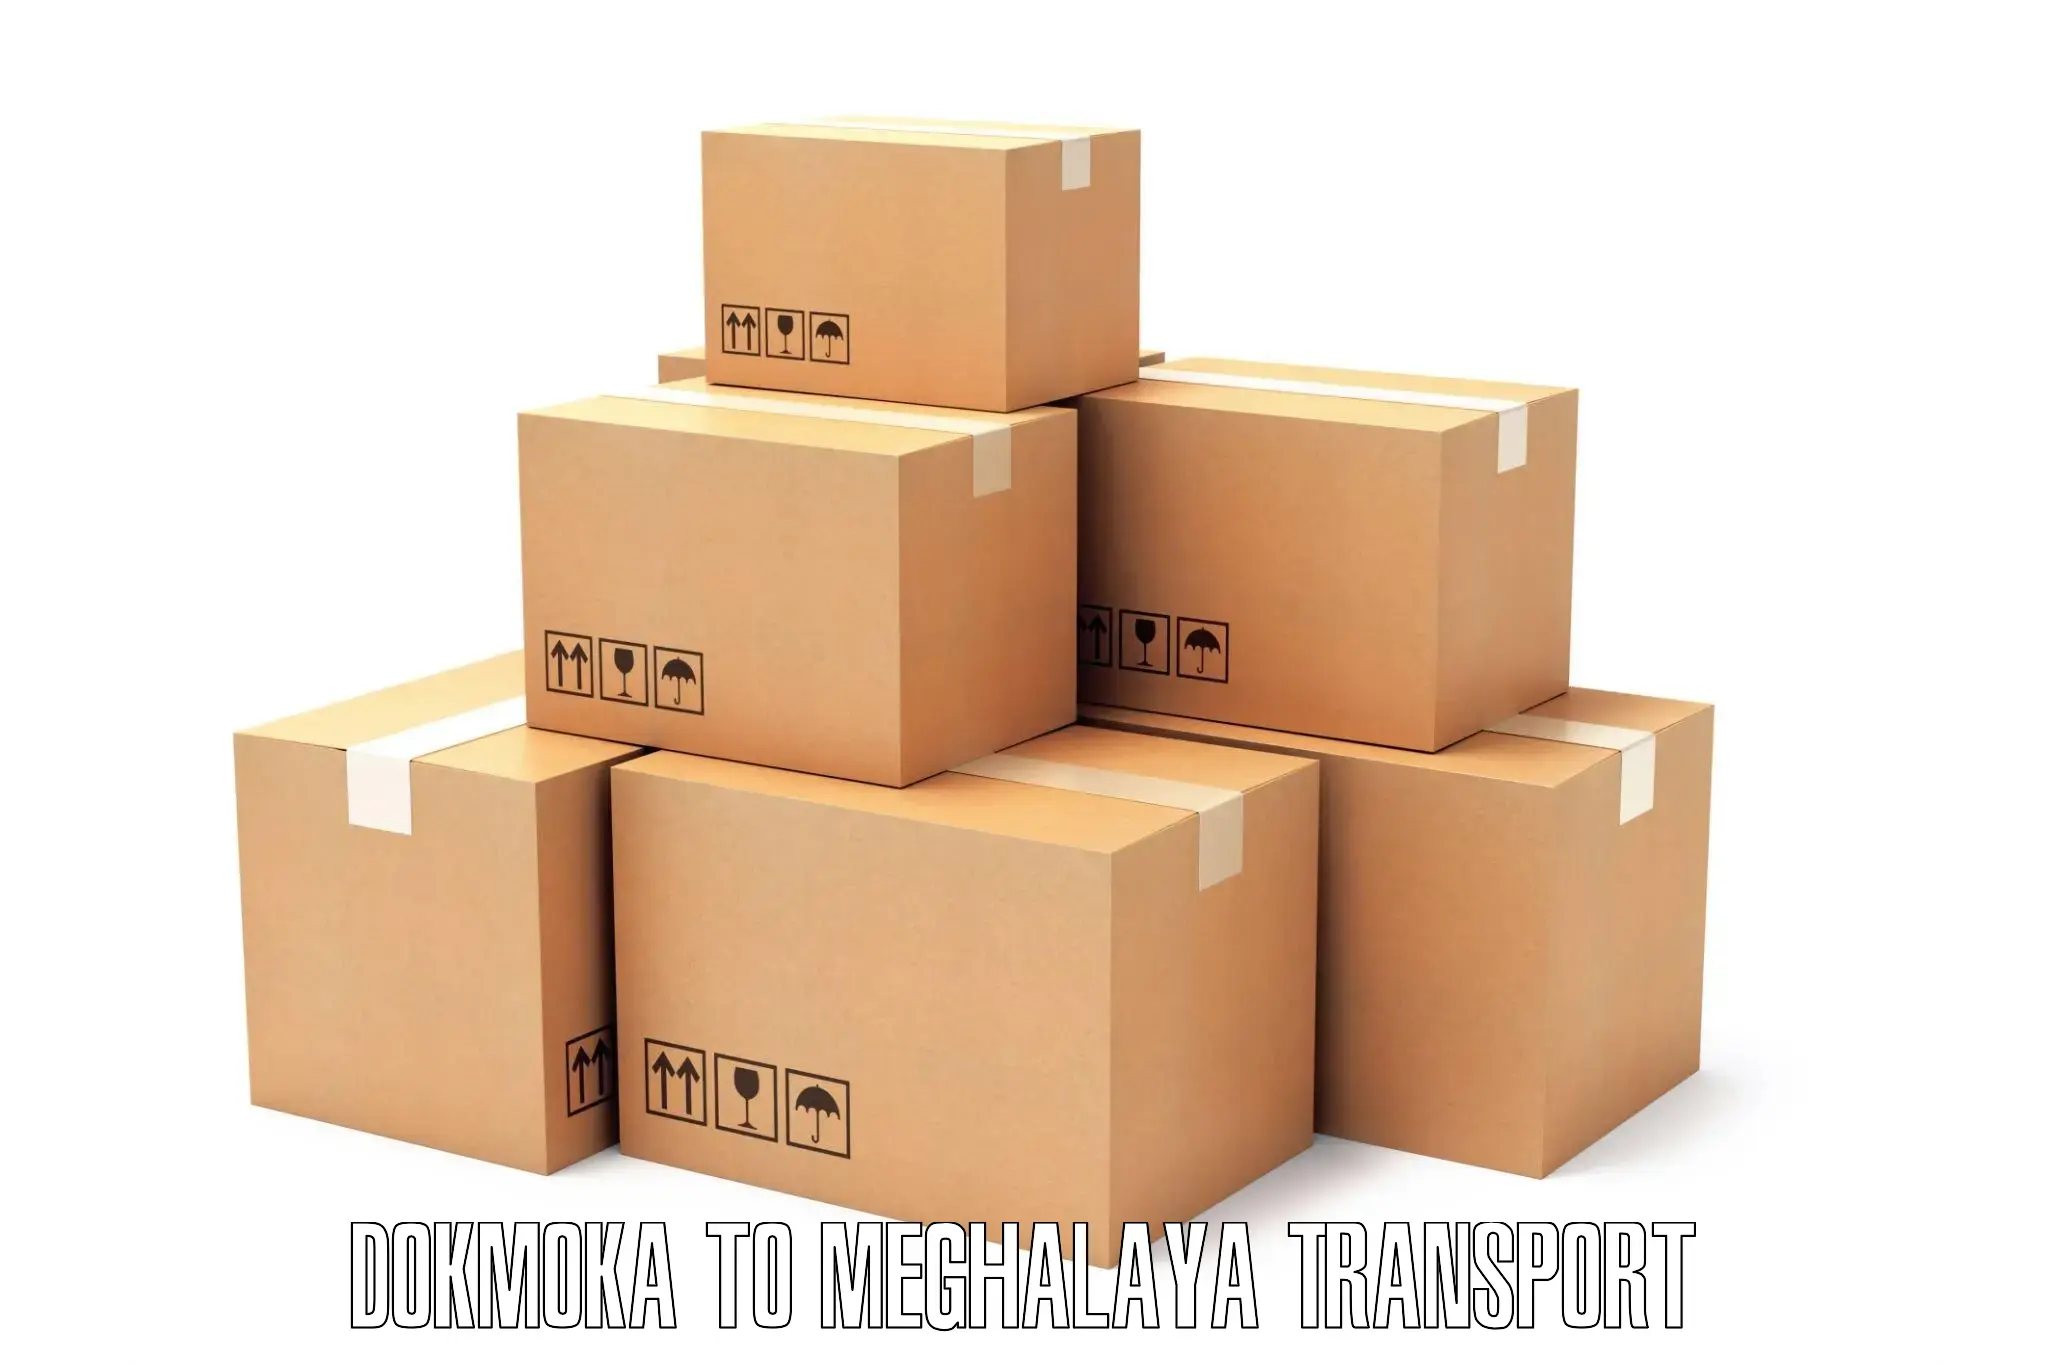 Cargo transport services Dokmoka to Umsaw